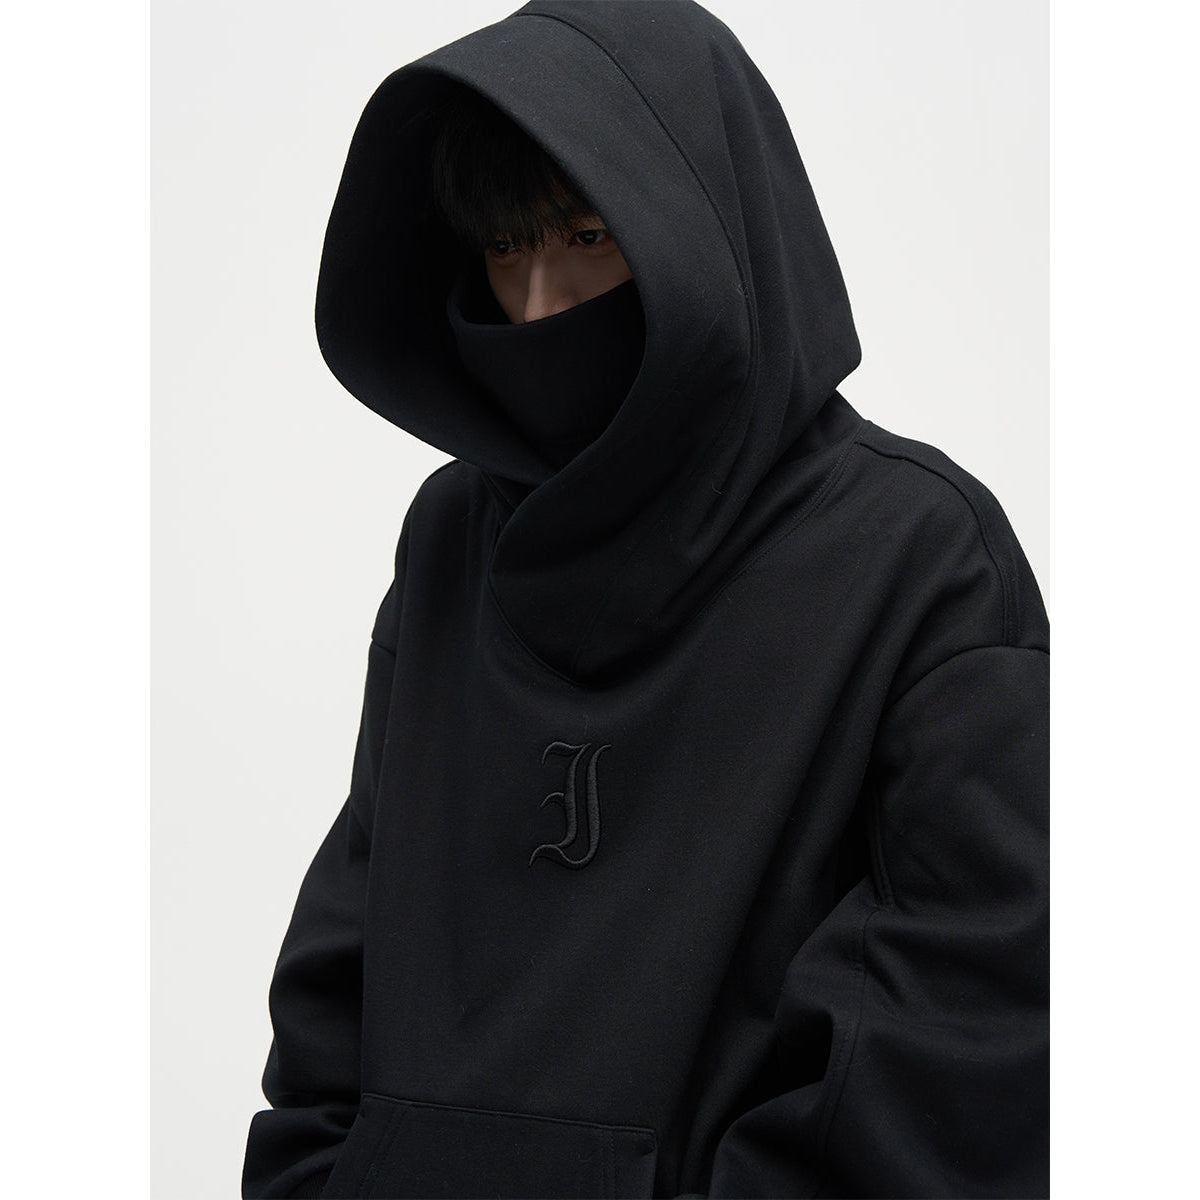 Ninja Style Hoodie Korean Street Fashion Hoodie By 77Flight Shop Online at OH Vault